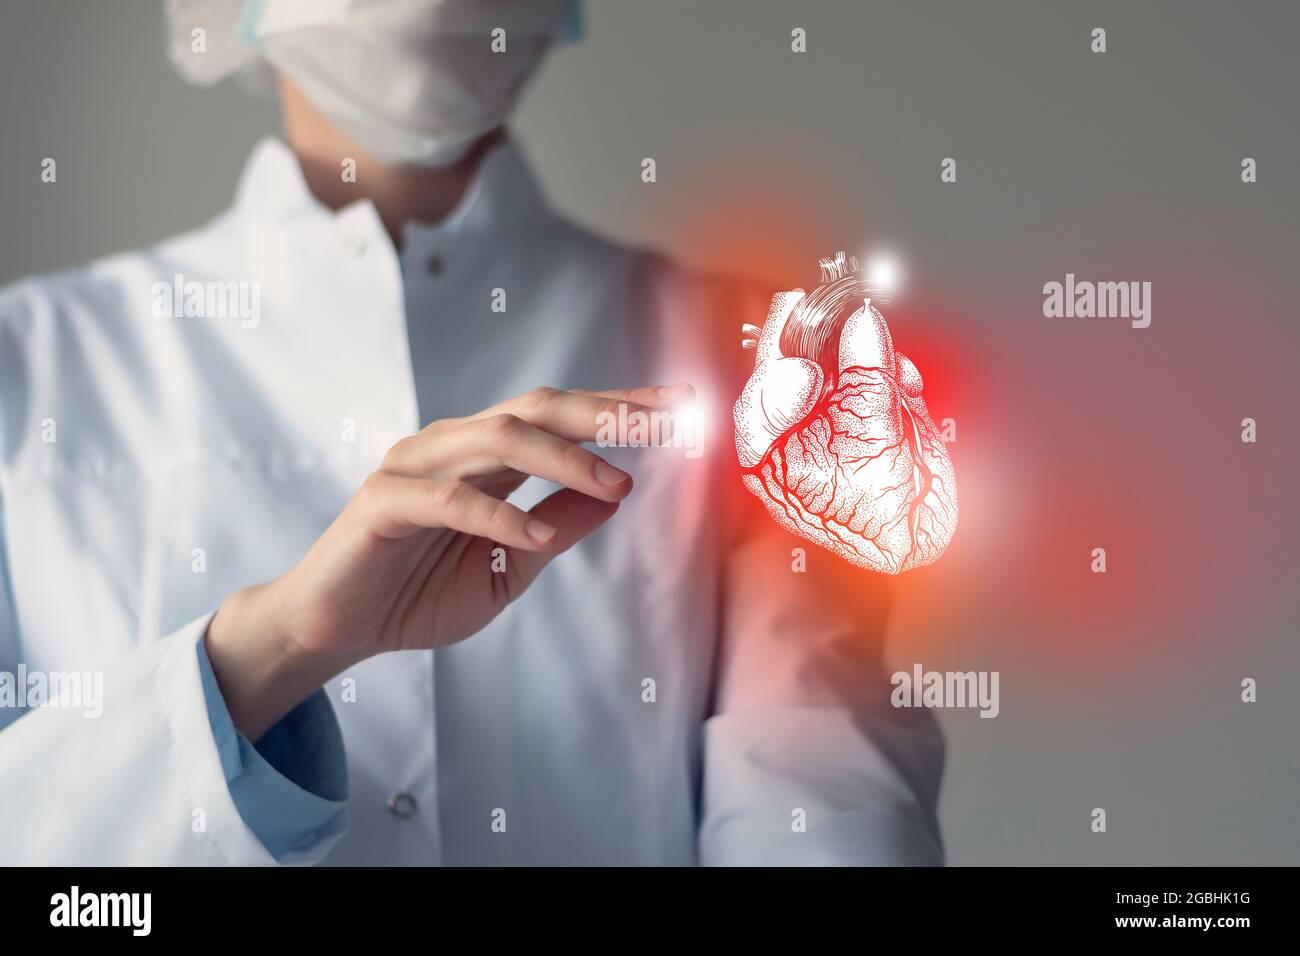 Femmina medico Touchstone cuore virtuale in mano. Foto sfocata, organo umano cucito a mano, evidenziato in rosso come simbolo di malattia. Assistenza sanitaria ospedaliera Foto Stock